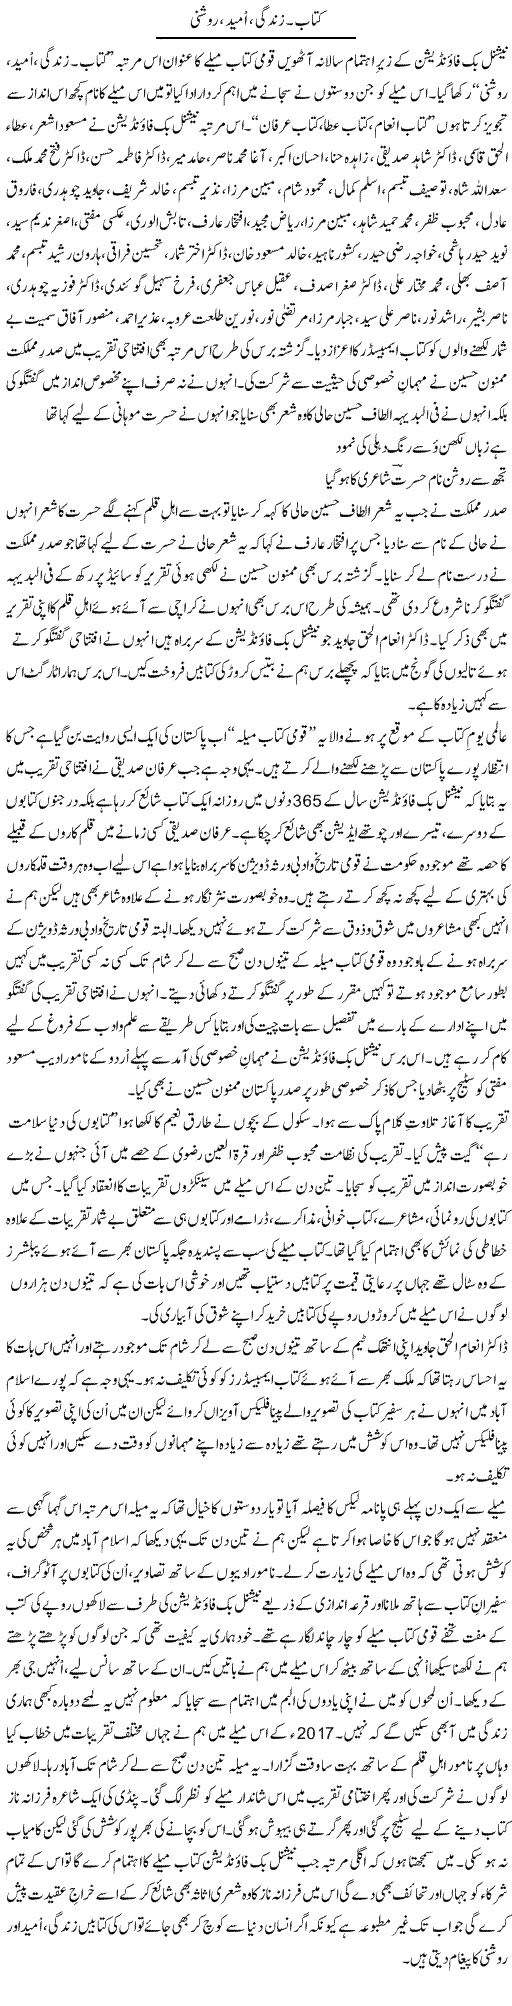 Kitaab. Zindagi, Umeed, Roshni | Shakir Hussain Shakir | Daily Urdu Columns